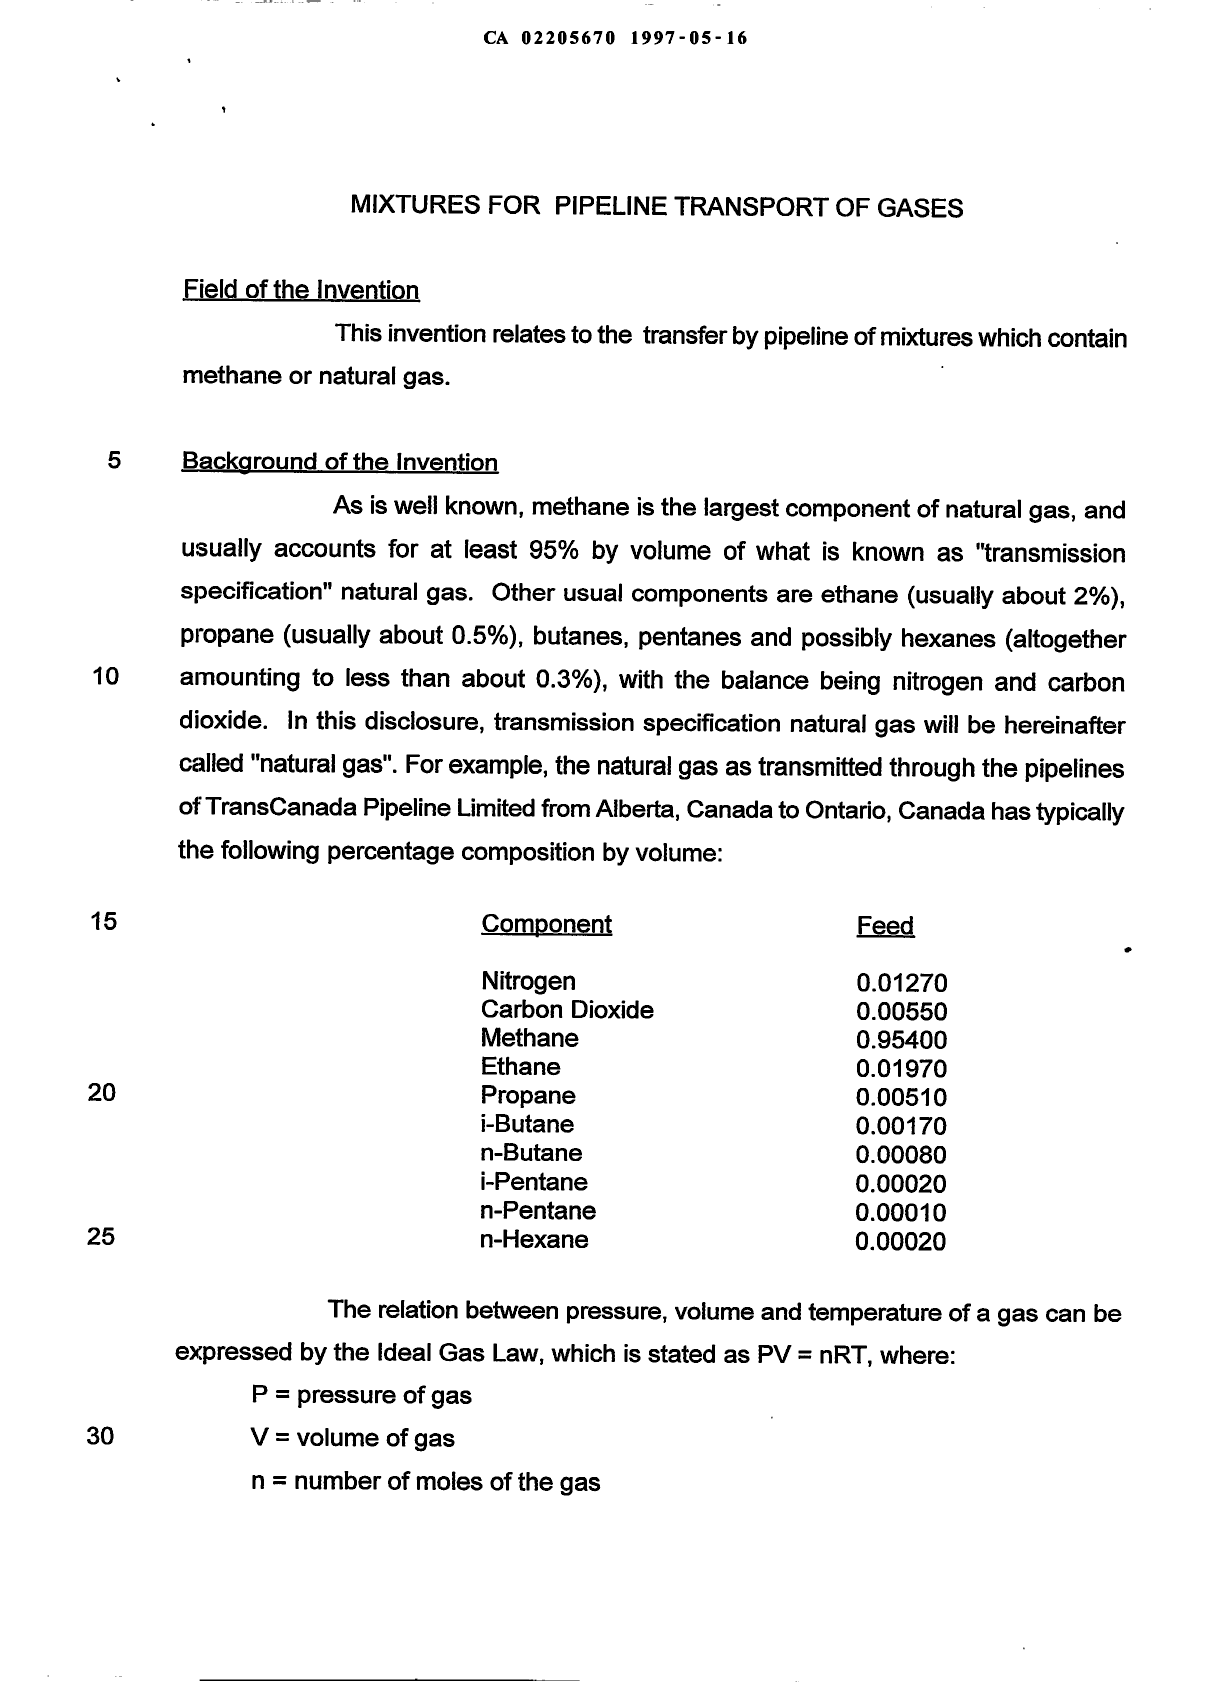 Canadian Patent Document 2205670. Description 19981221. Image 1 of 12